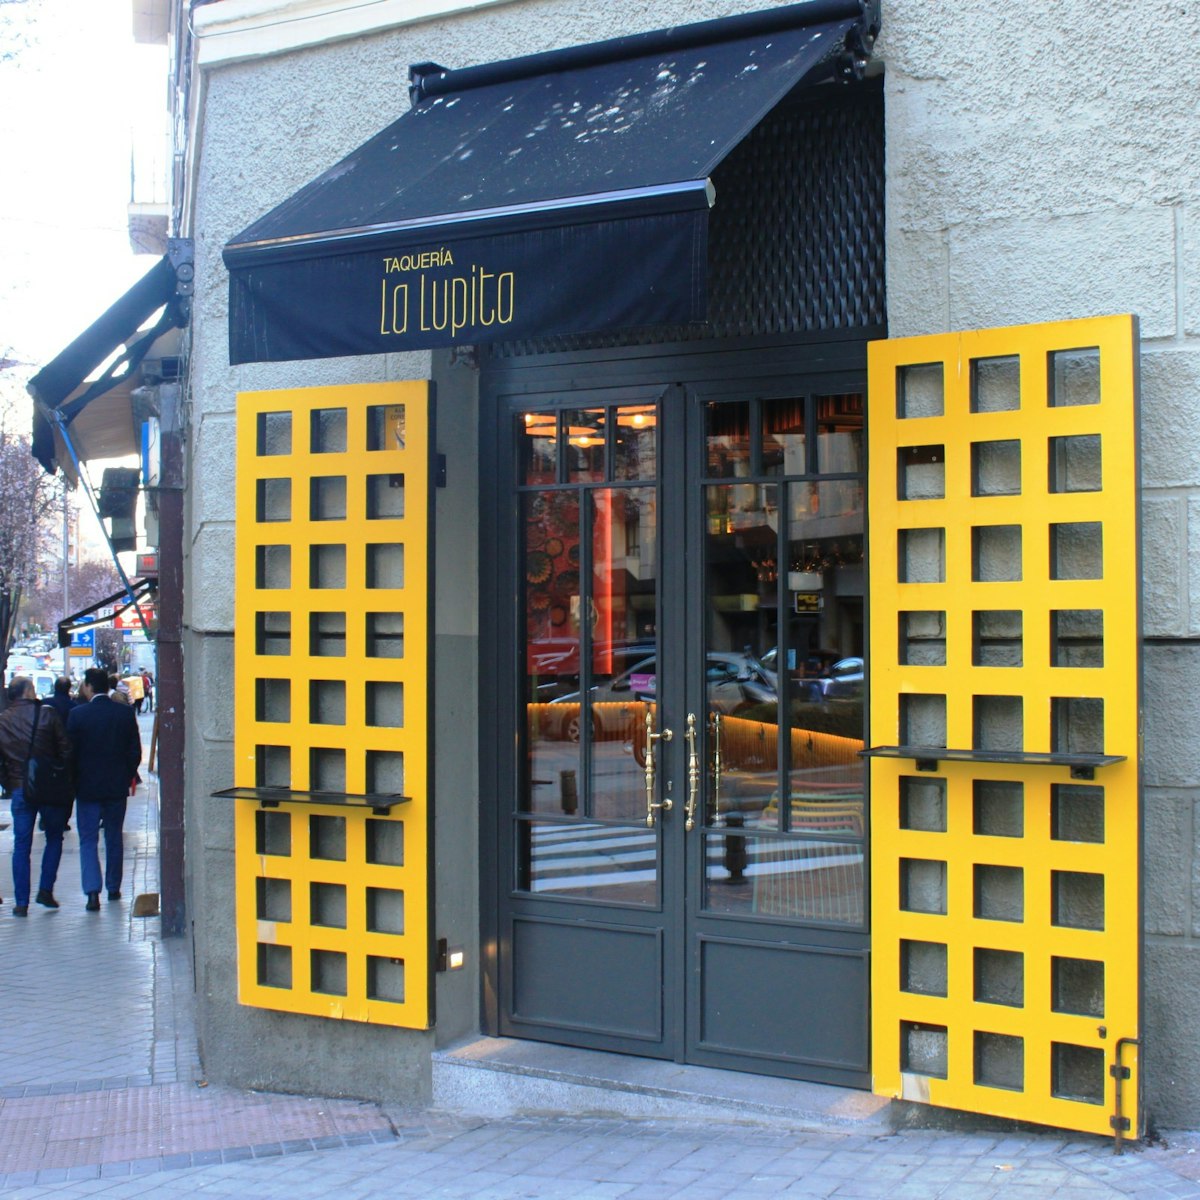 The yellow doors at Taquería La Lupita.